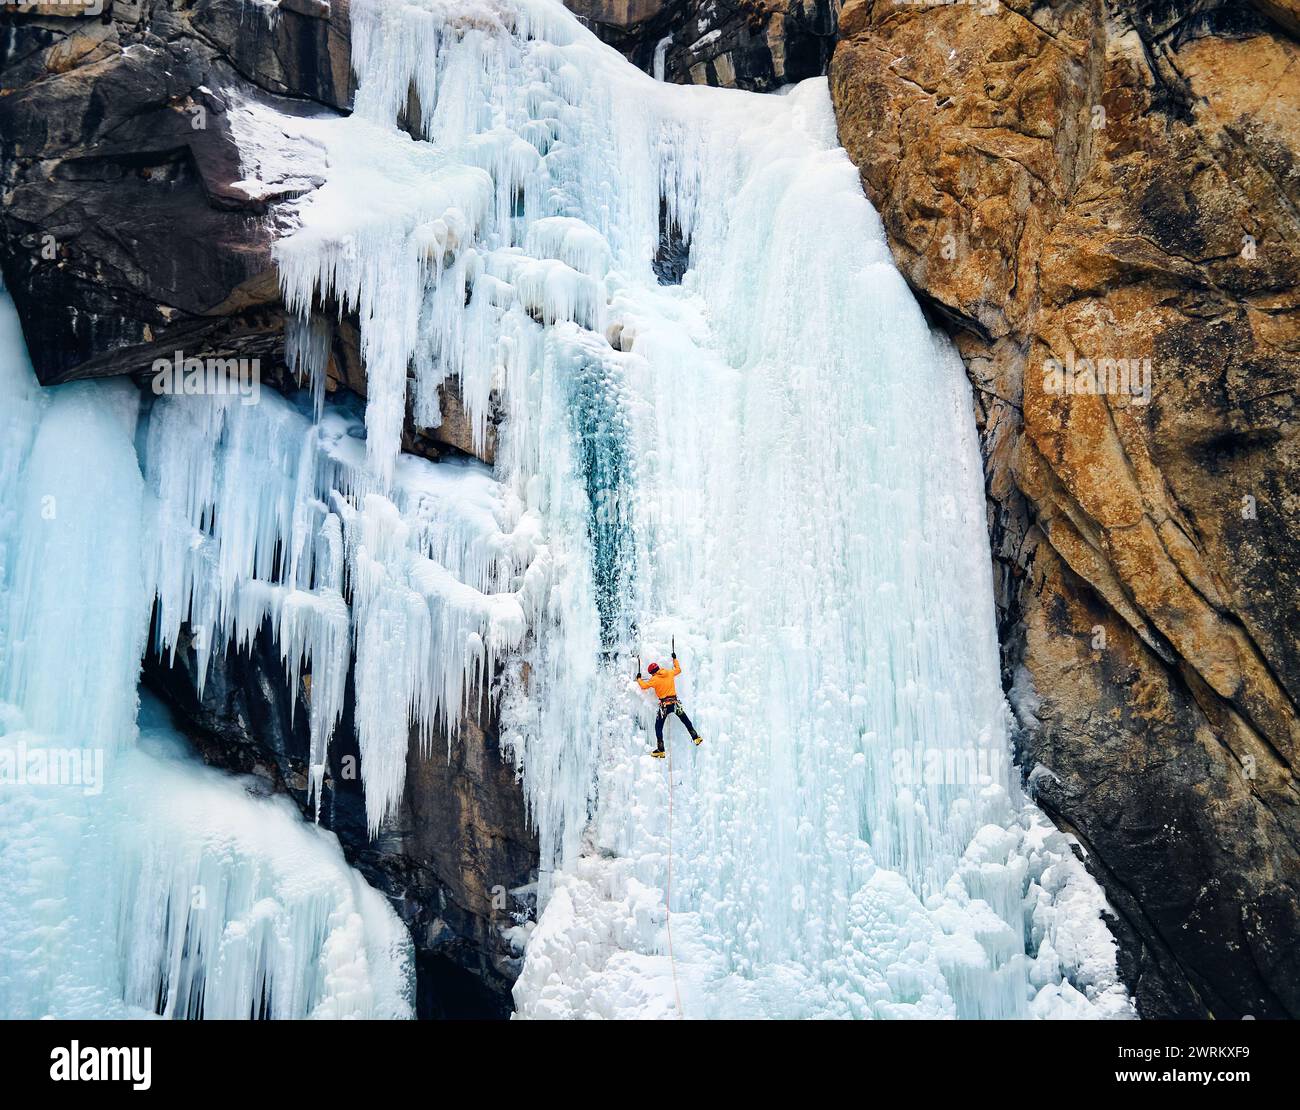 Luftaufnahme eines Athleten in orangefarbener Jacke Eisklettern am großen gefrorenen Wasserfall in der Barskoon-Schlucht im Bergtal in Kirgisistan Stockfoto